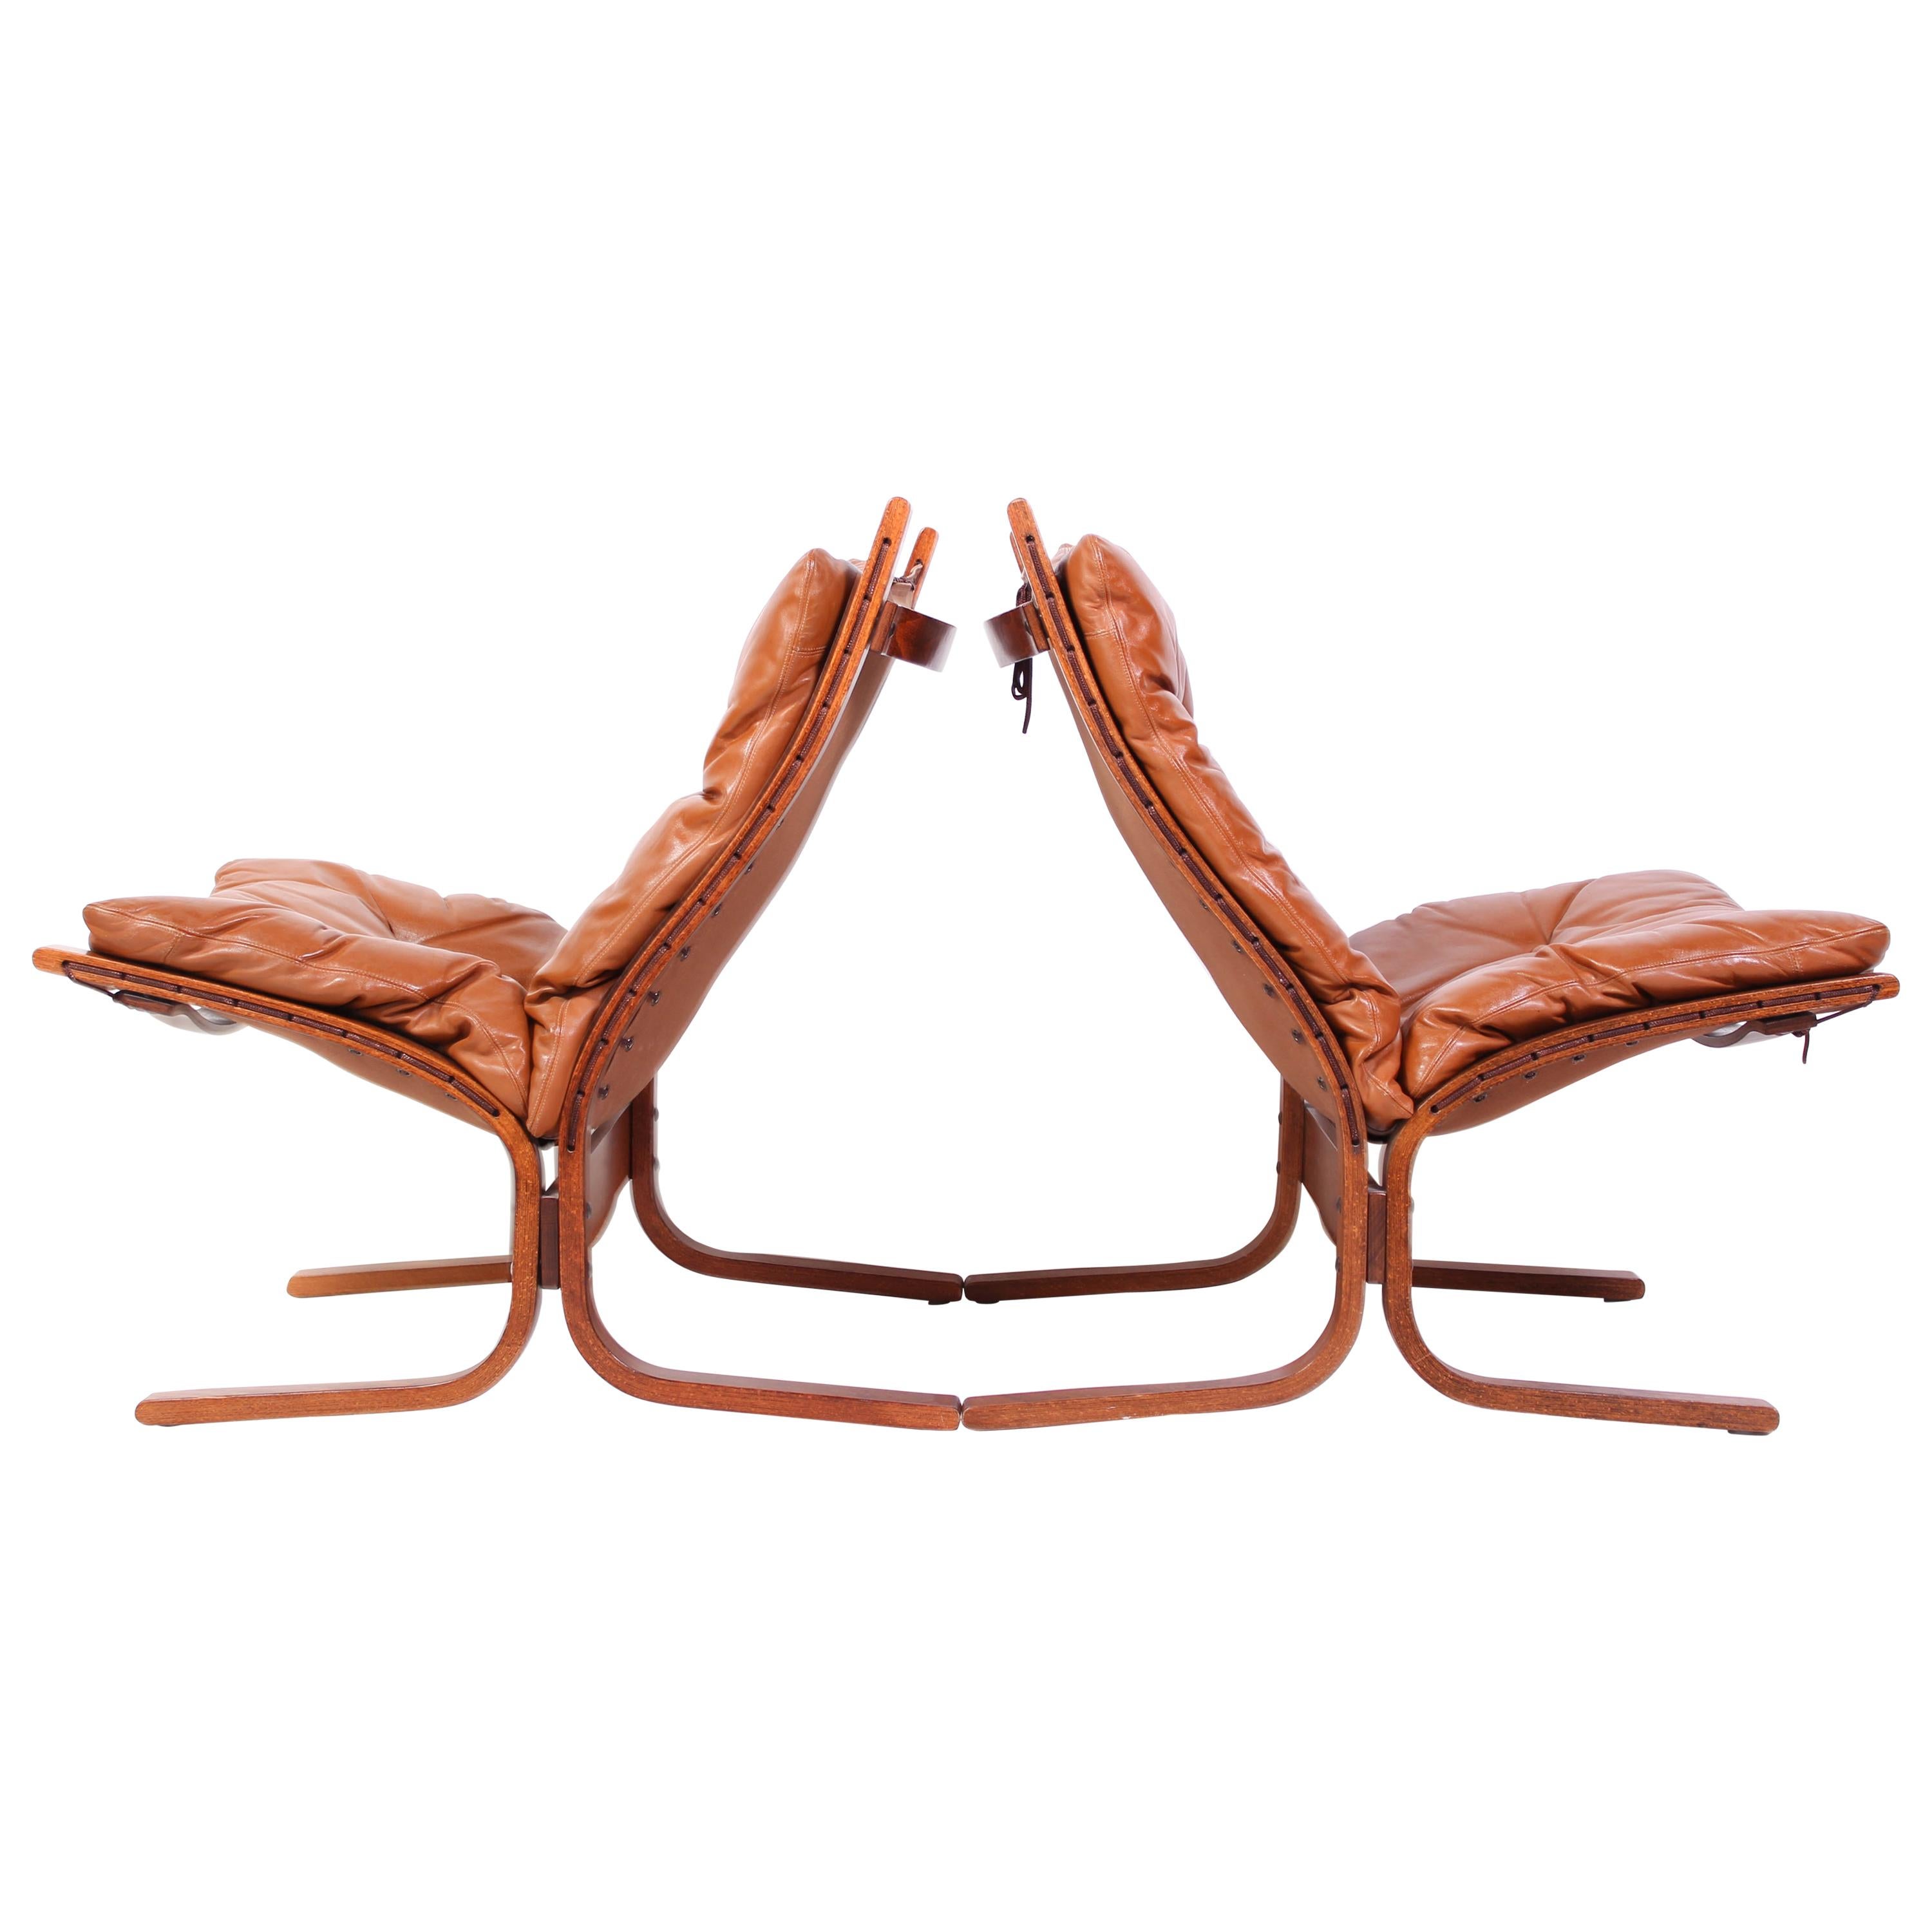 Pair of Ingmar Relling "Siesta" Tan Leather Chairs by Westnofa